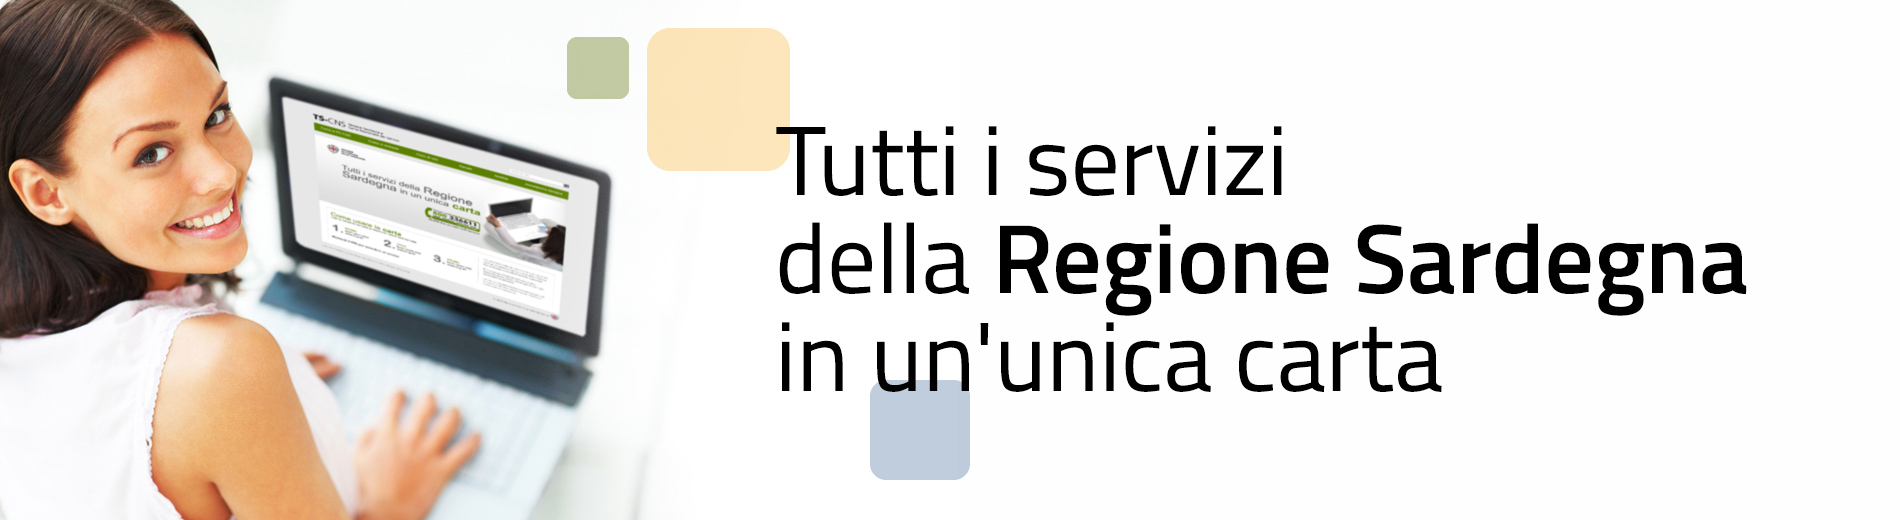 Tutti i servizi della Regione Sardegna in un'unica carta